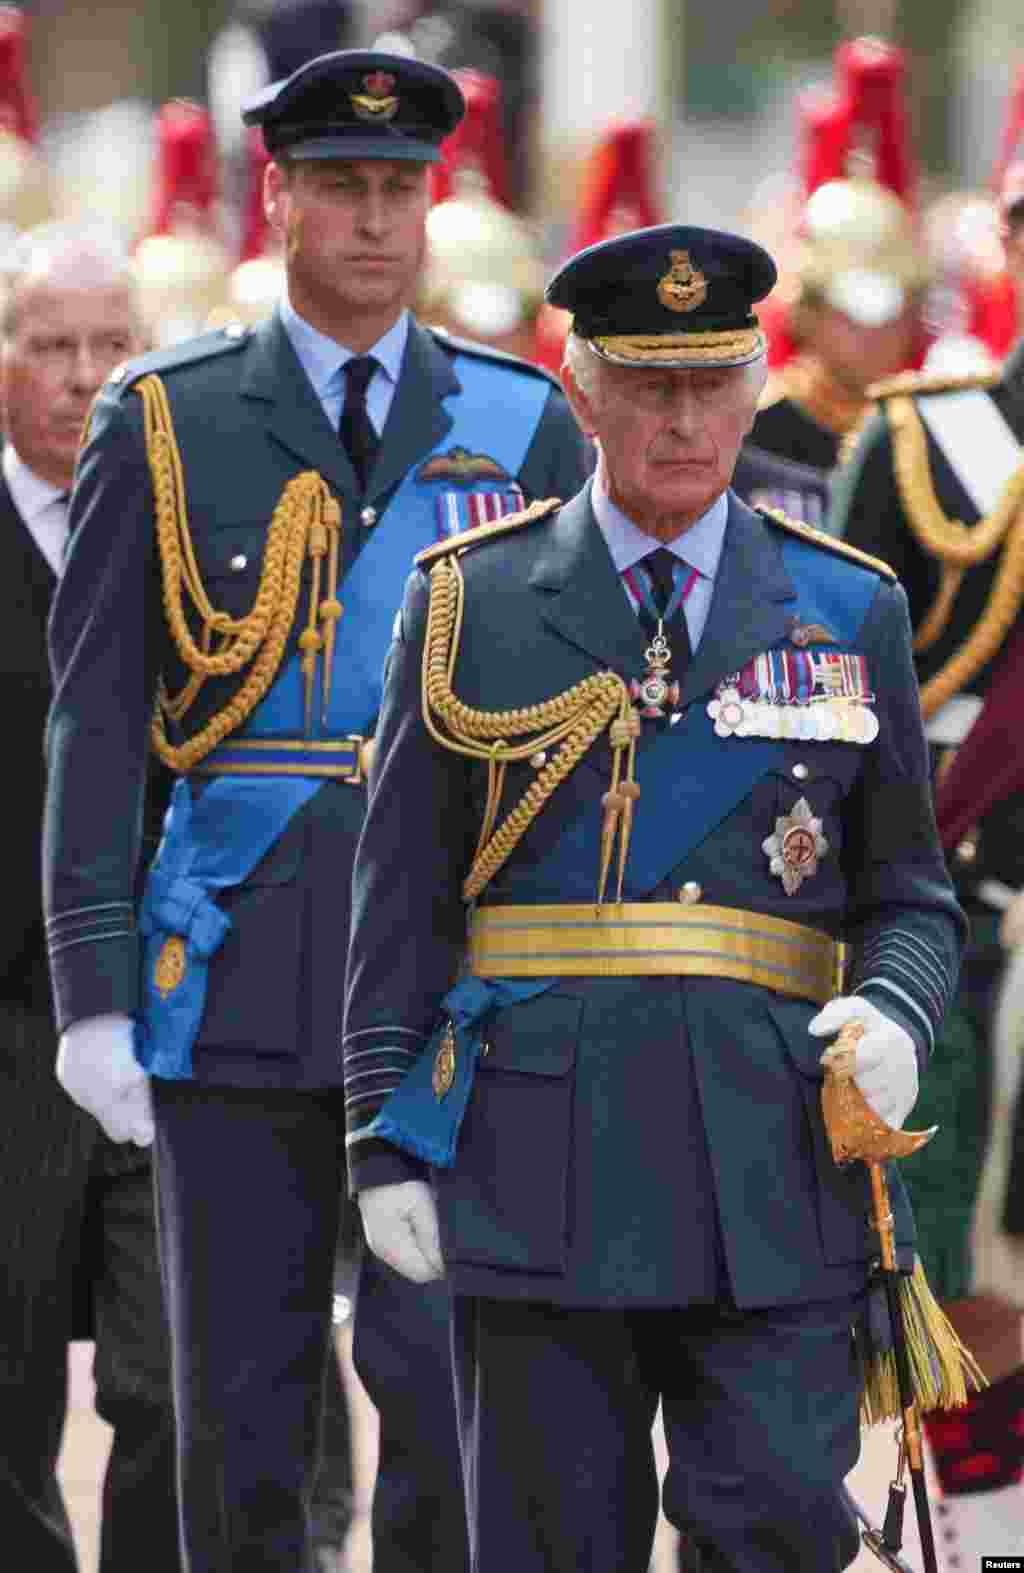 William, el príncipe de Gales, y el rey Carlos III de Gran Bretaña marchan durante la procesión del ataúd de la reina Isabel II desde el Palacio de Buckingham hasta las Casas del Parlamento, en Londres, Gran Bretaña, el 14 de septiembre de 2022. REUTERS/Maja Smiejkowska